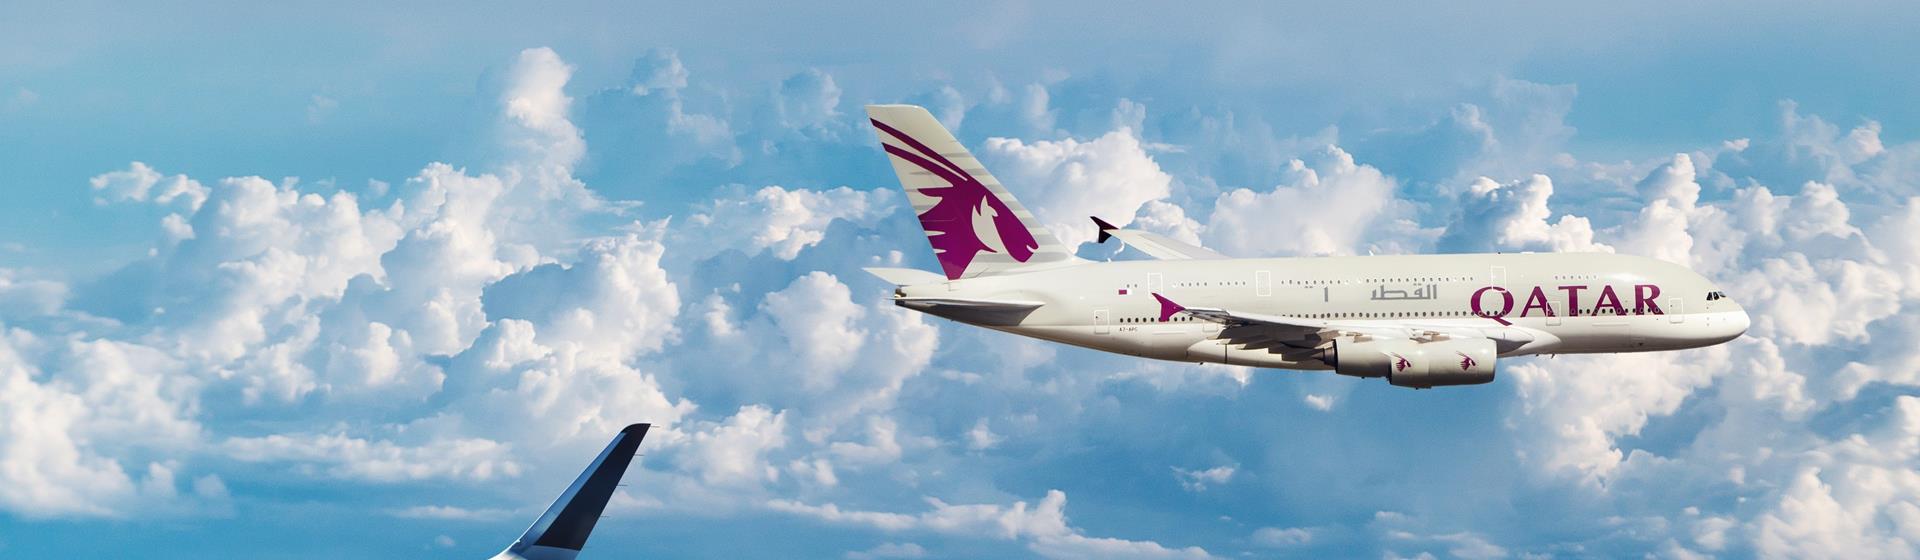 Qatar Airways Flights 